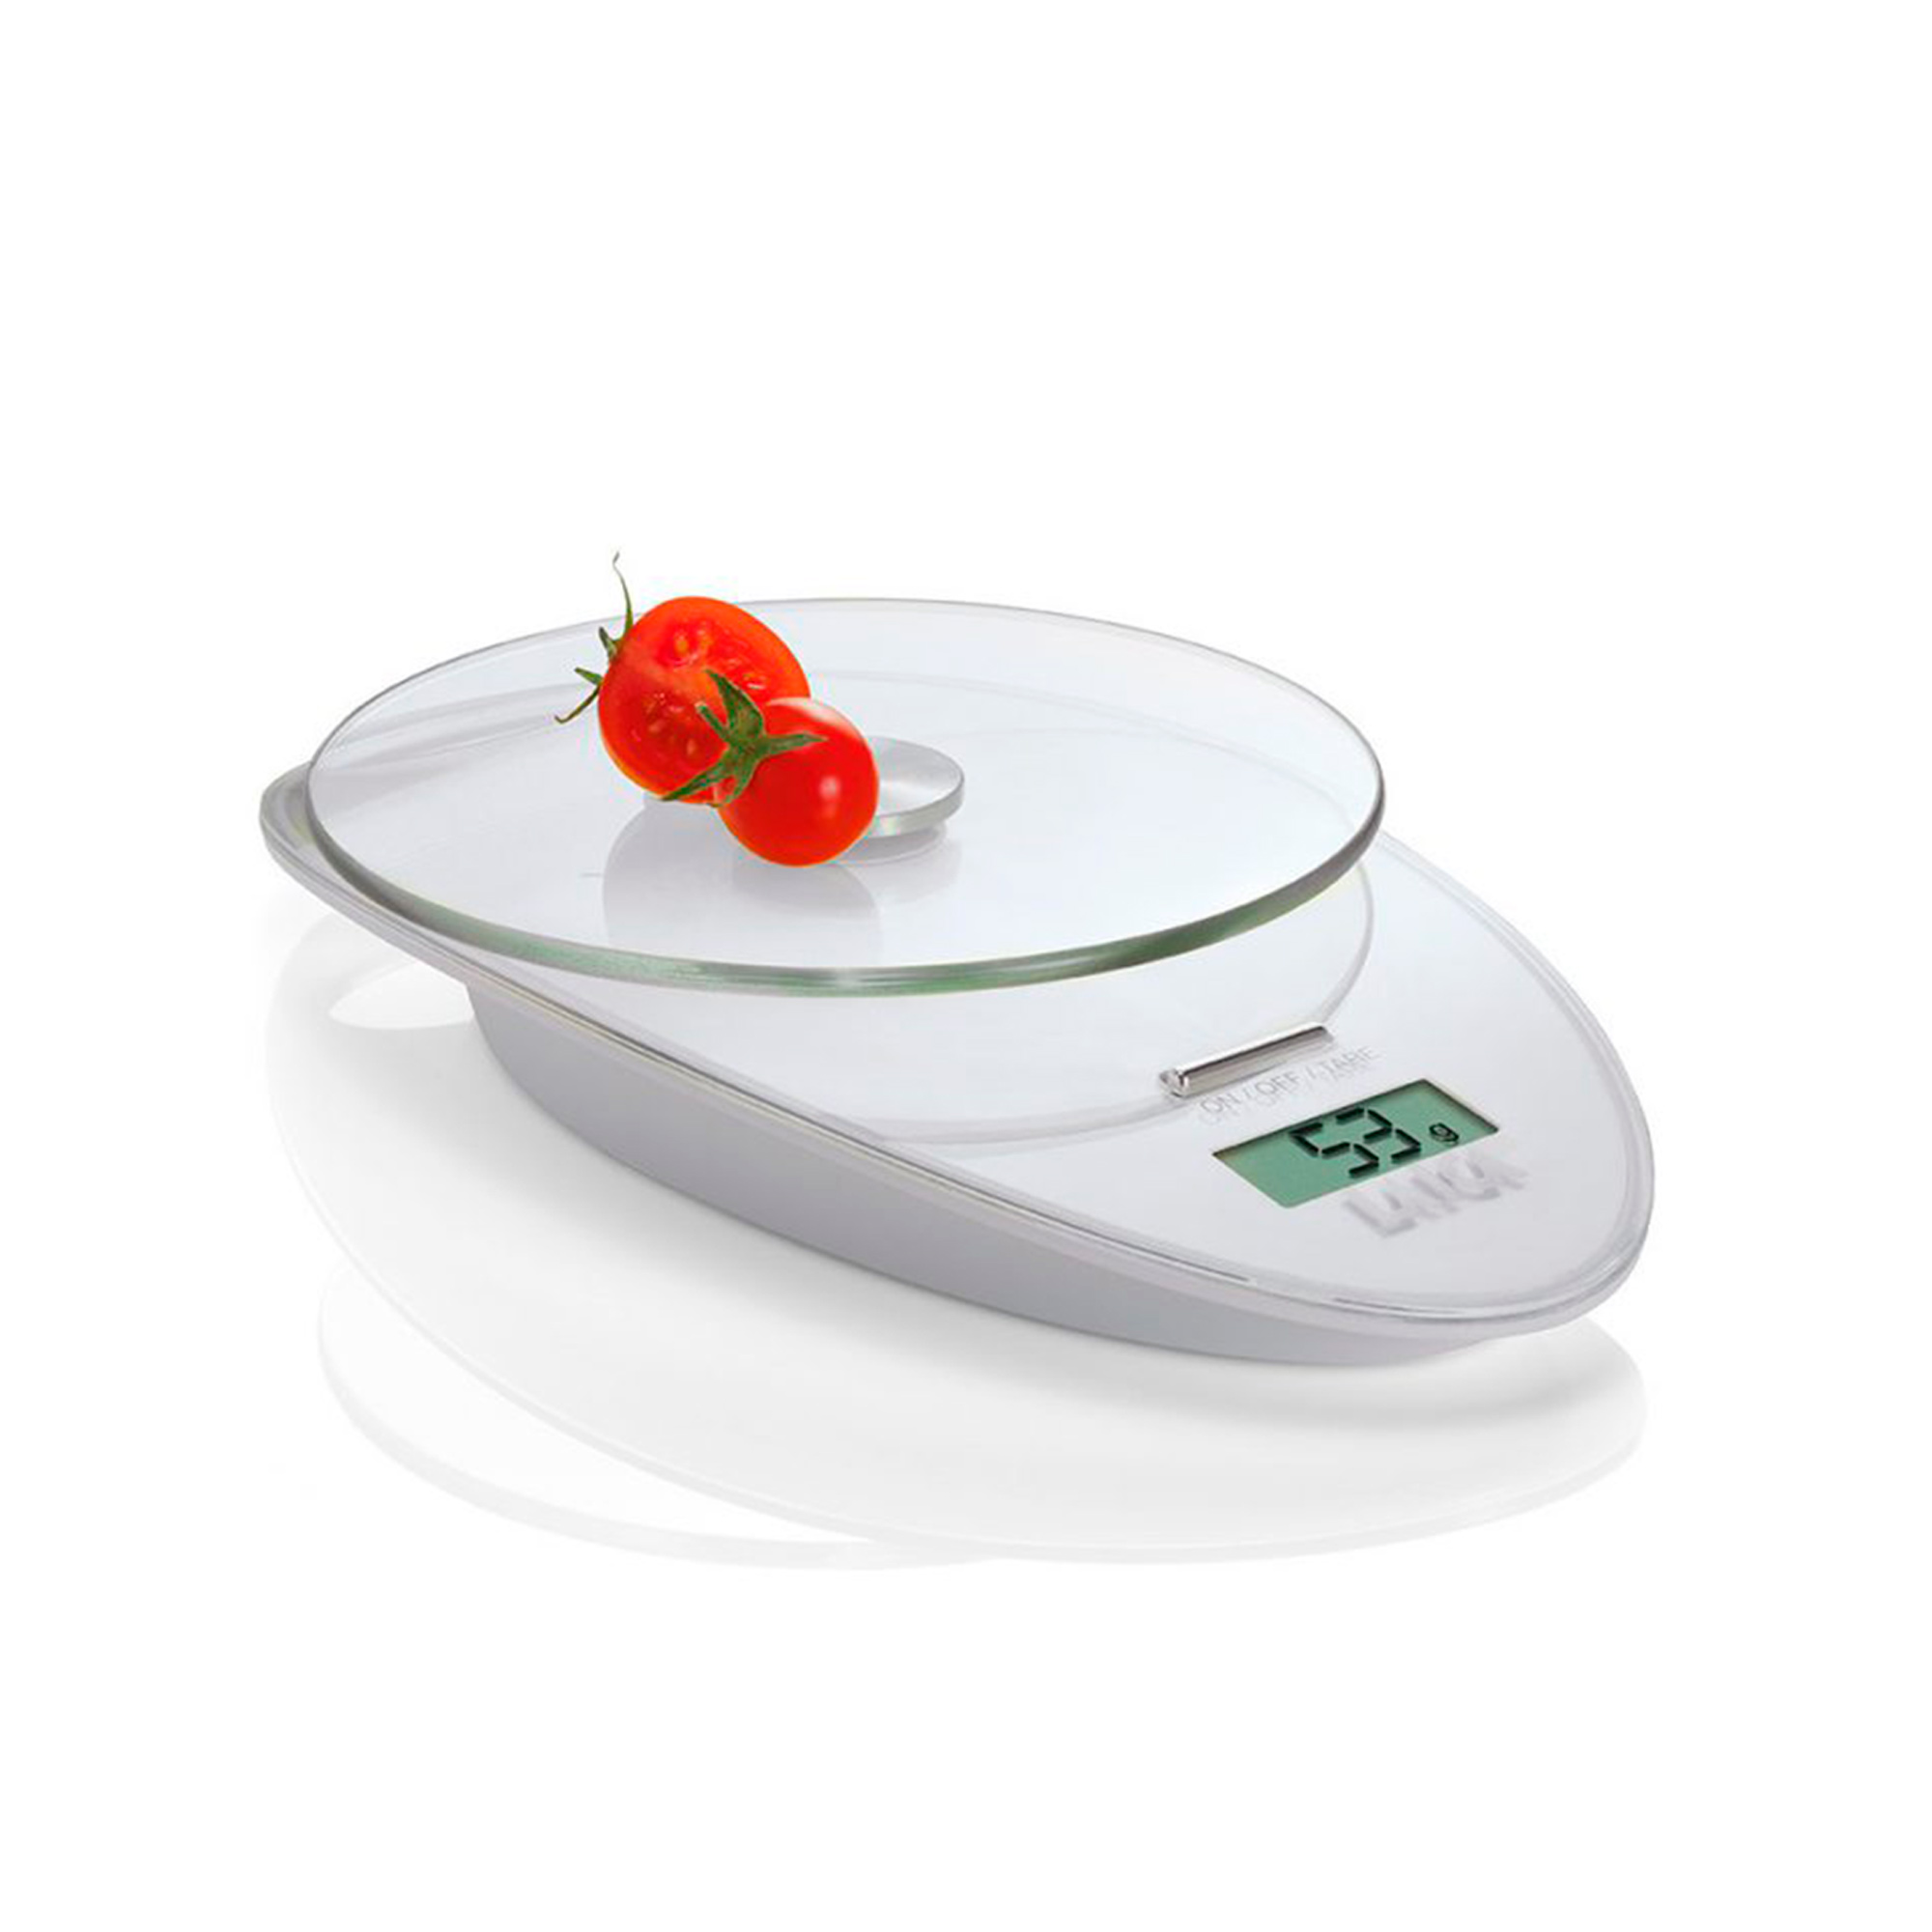 Laica Ks1005 De cocina balanza electro.blanca 3 kg color digital en vidrio templado incluye gancho para la054